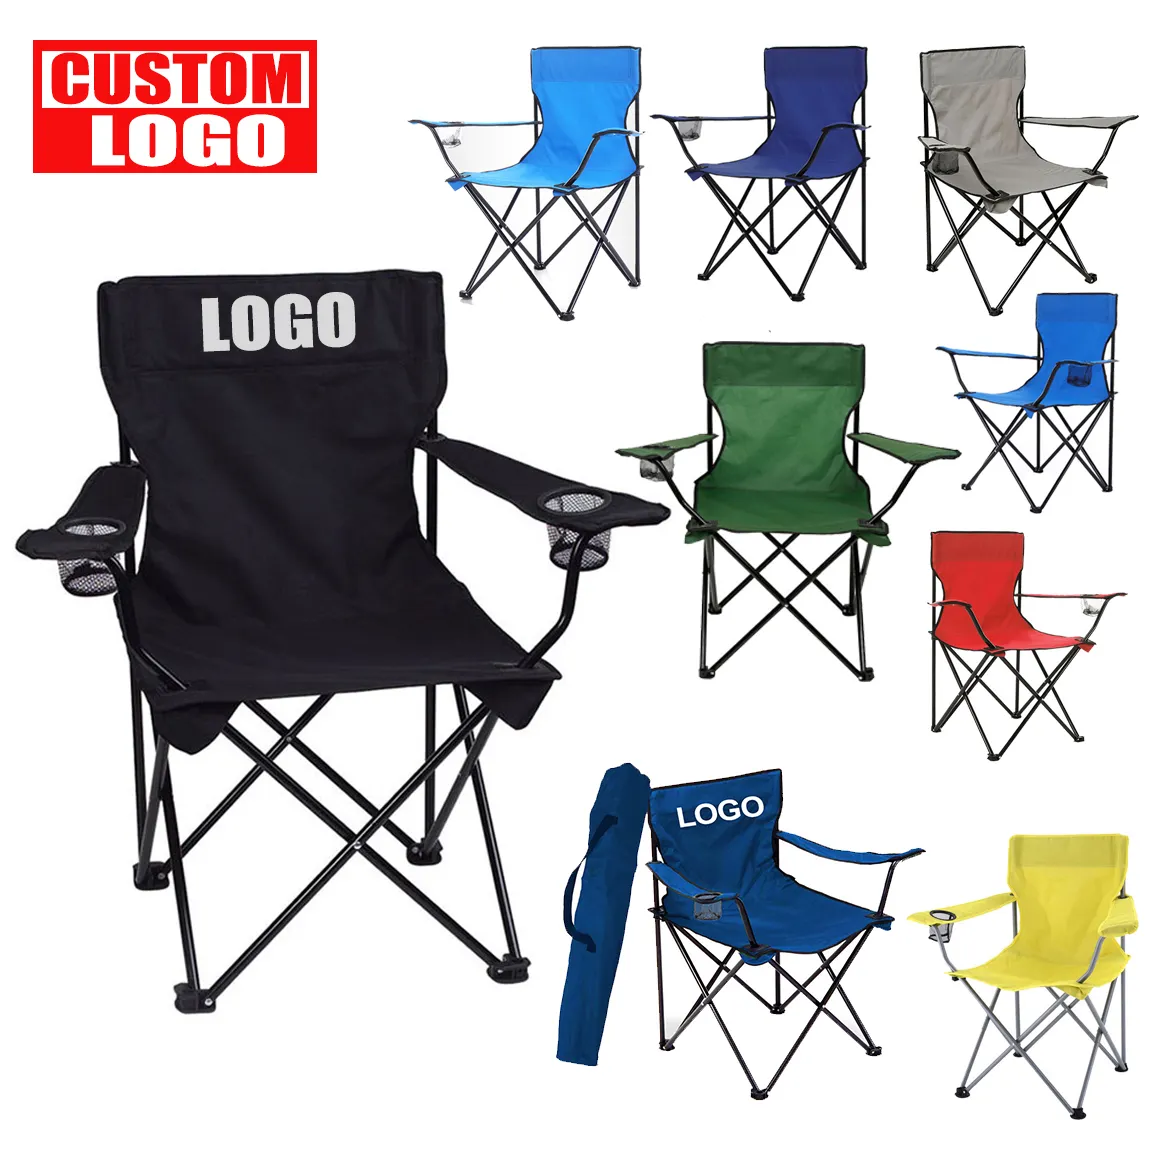 사용자 정의 디자인 로고 인쇄 야외 비치 의자 휴대용 배낭 의자 낚시 하이킹 접이식 캠핑 의자